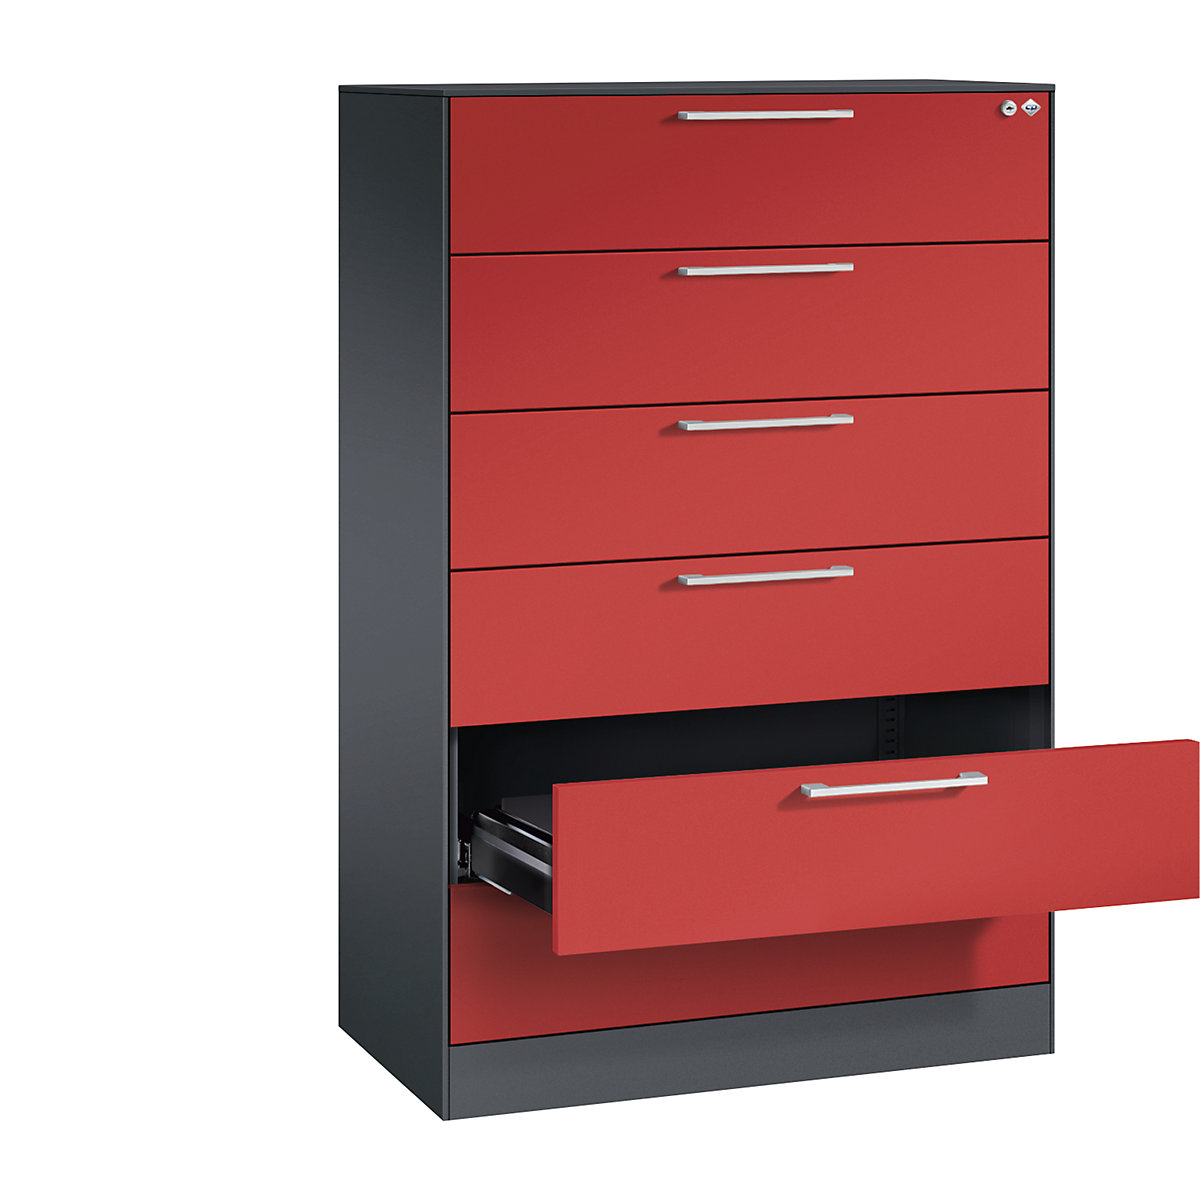 Fișier ASISTO – C+P, înălțime 1292 mm, cu 6 sertare, DIN A5 orizontal, gri negru/roșu aprins-6